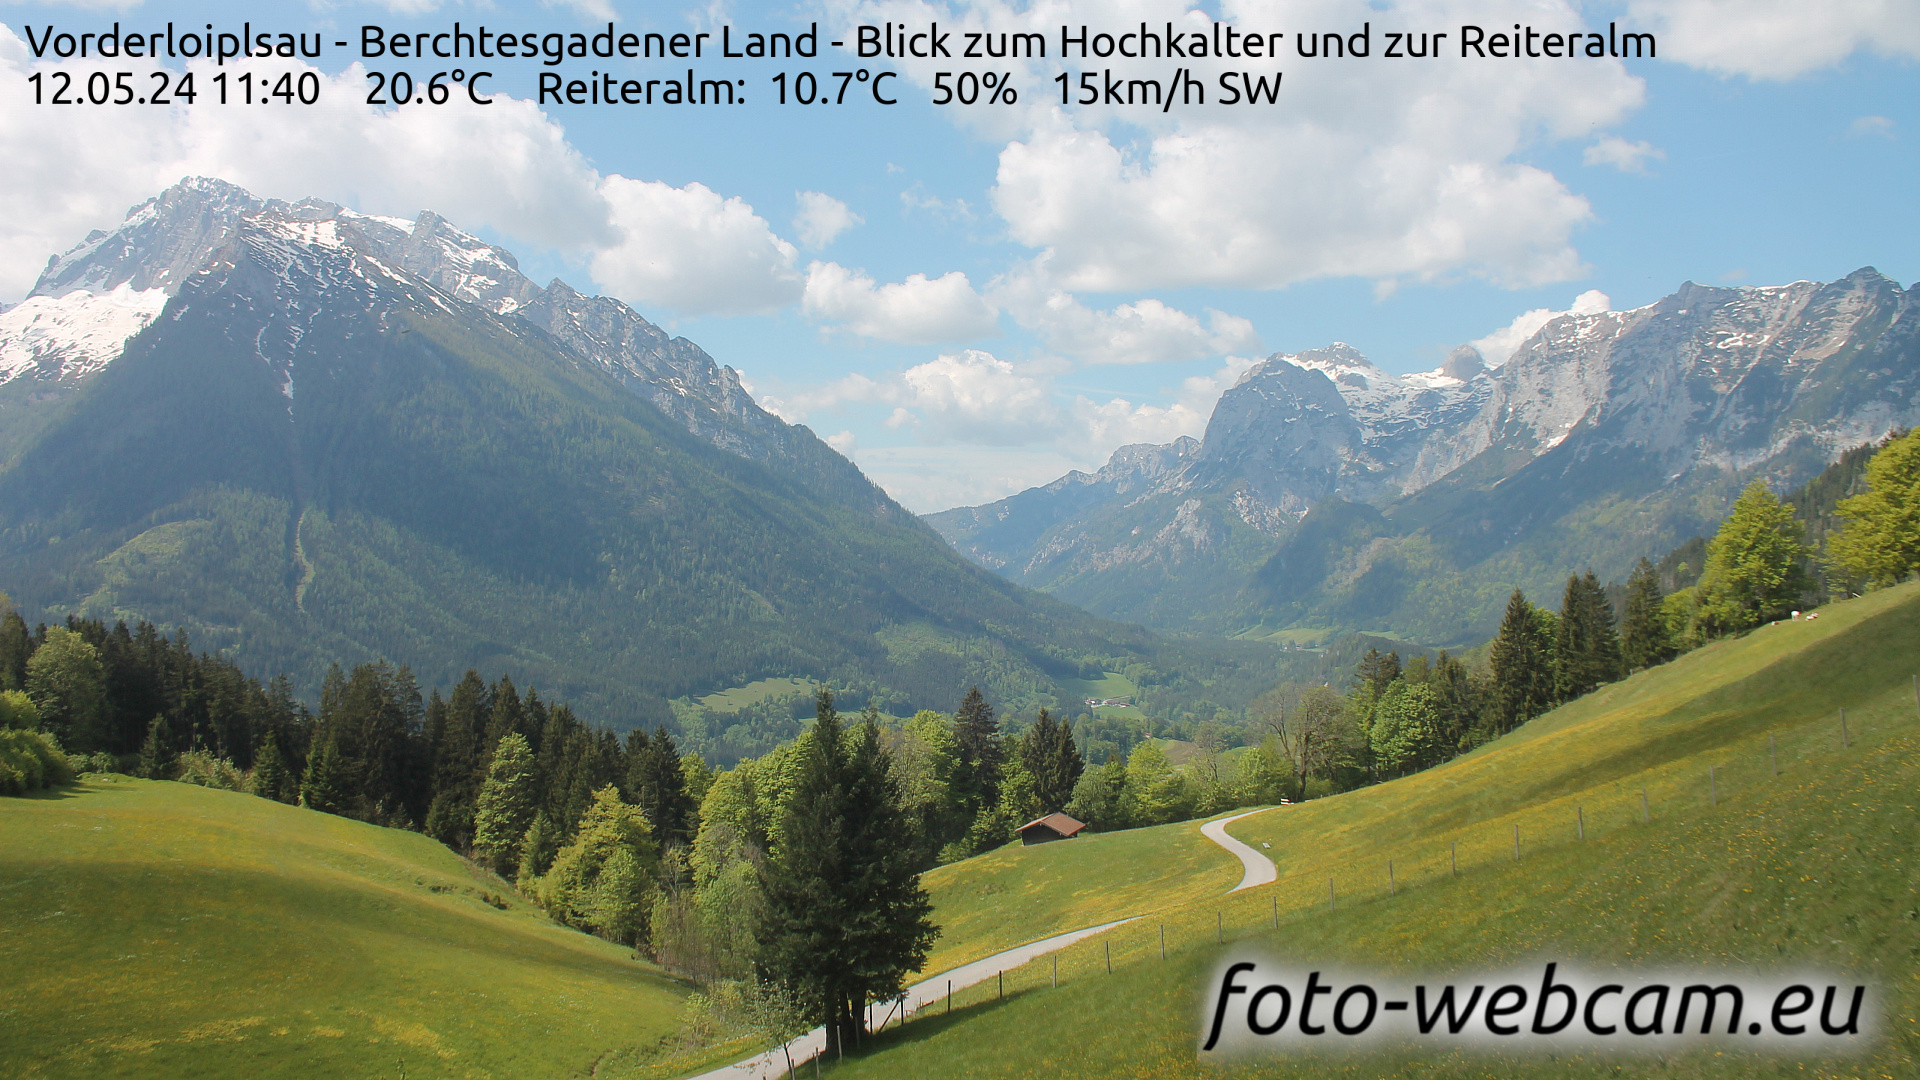 Ramsau bei Berchtesgaden Je. 11:48